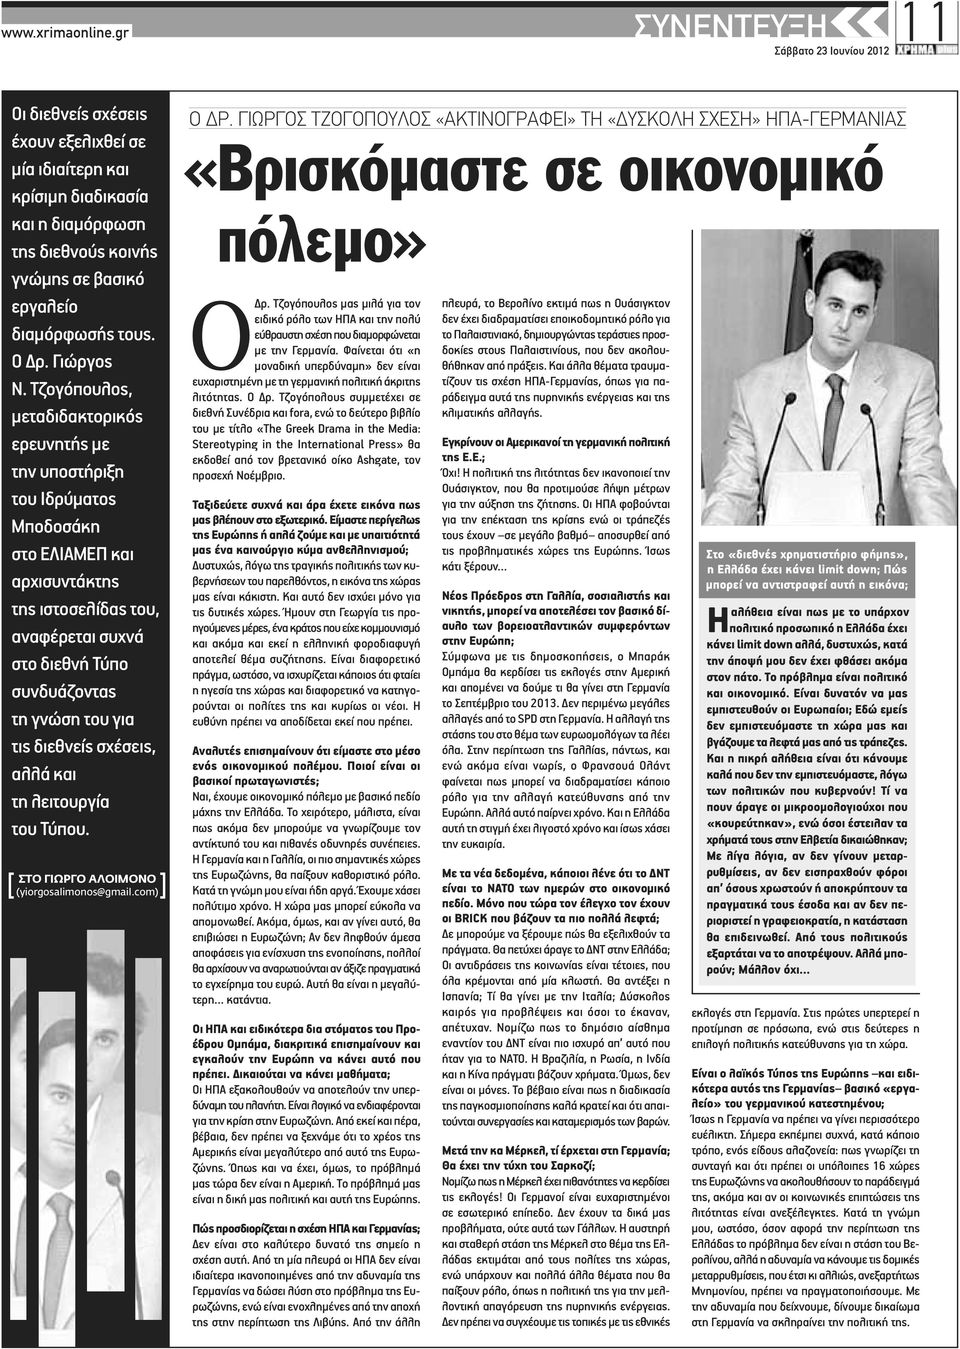 Τζογόπουλος, μεταδιδακτορικός ερευνητής με την υποστήριξη του Ιδρύματος Μποδοσάκη στο ΕΛΙΑΜΕΠ και αρχισυντάκτης της ιστοσελίδας του, αναφέρεται συχνά στο διεθνή Τύπο συνδυάζοντας τη γνώση του για τις